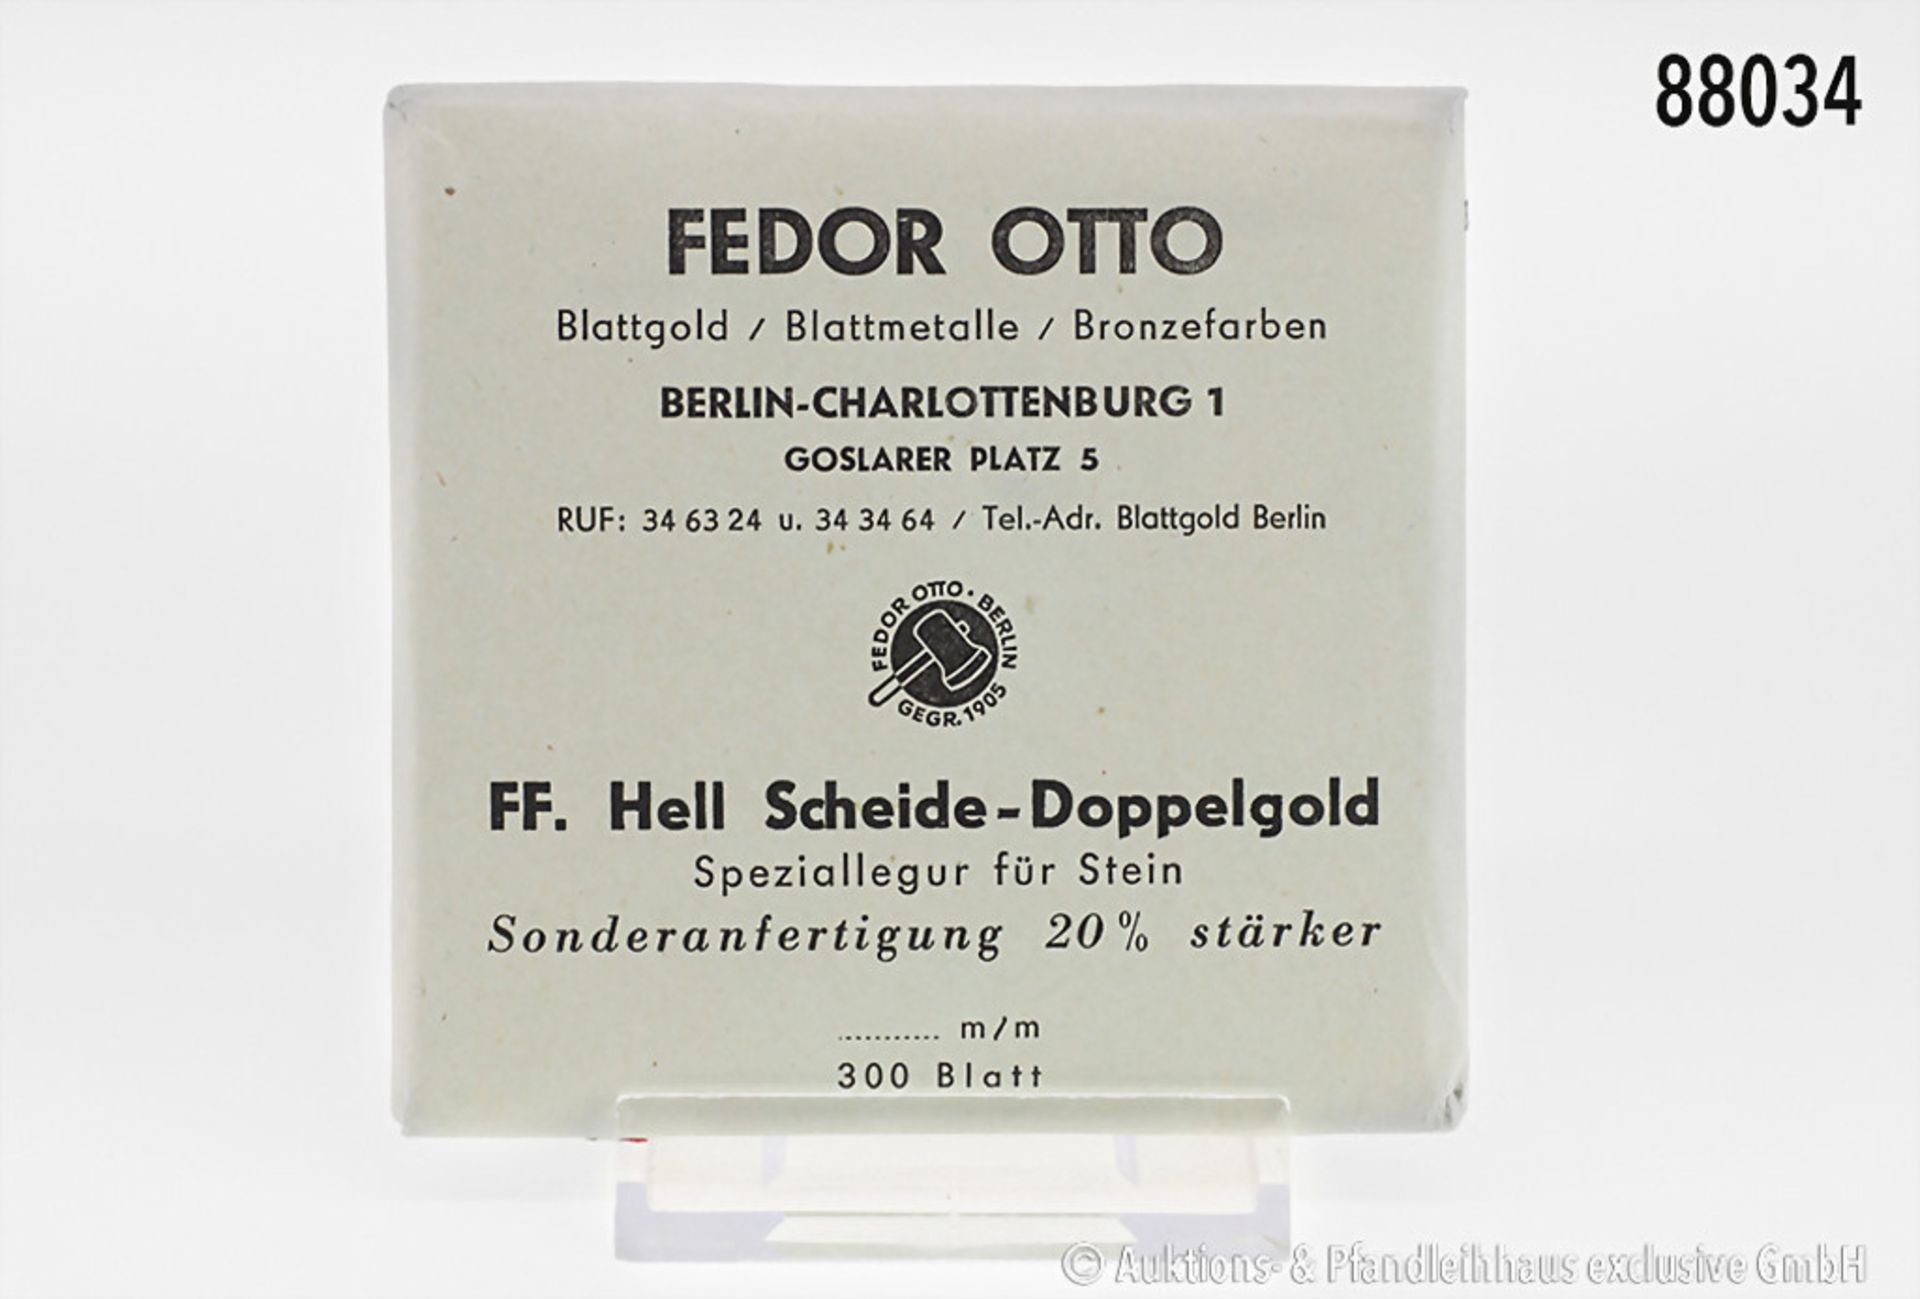 1 Packung Blattgold, 300 Blatt, Fa. Fedor Otto, Berlin, Speziallegur für Stein, ...